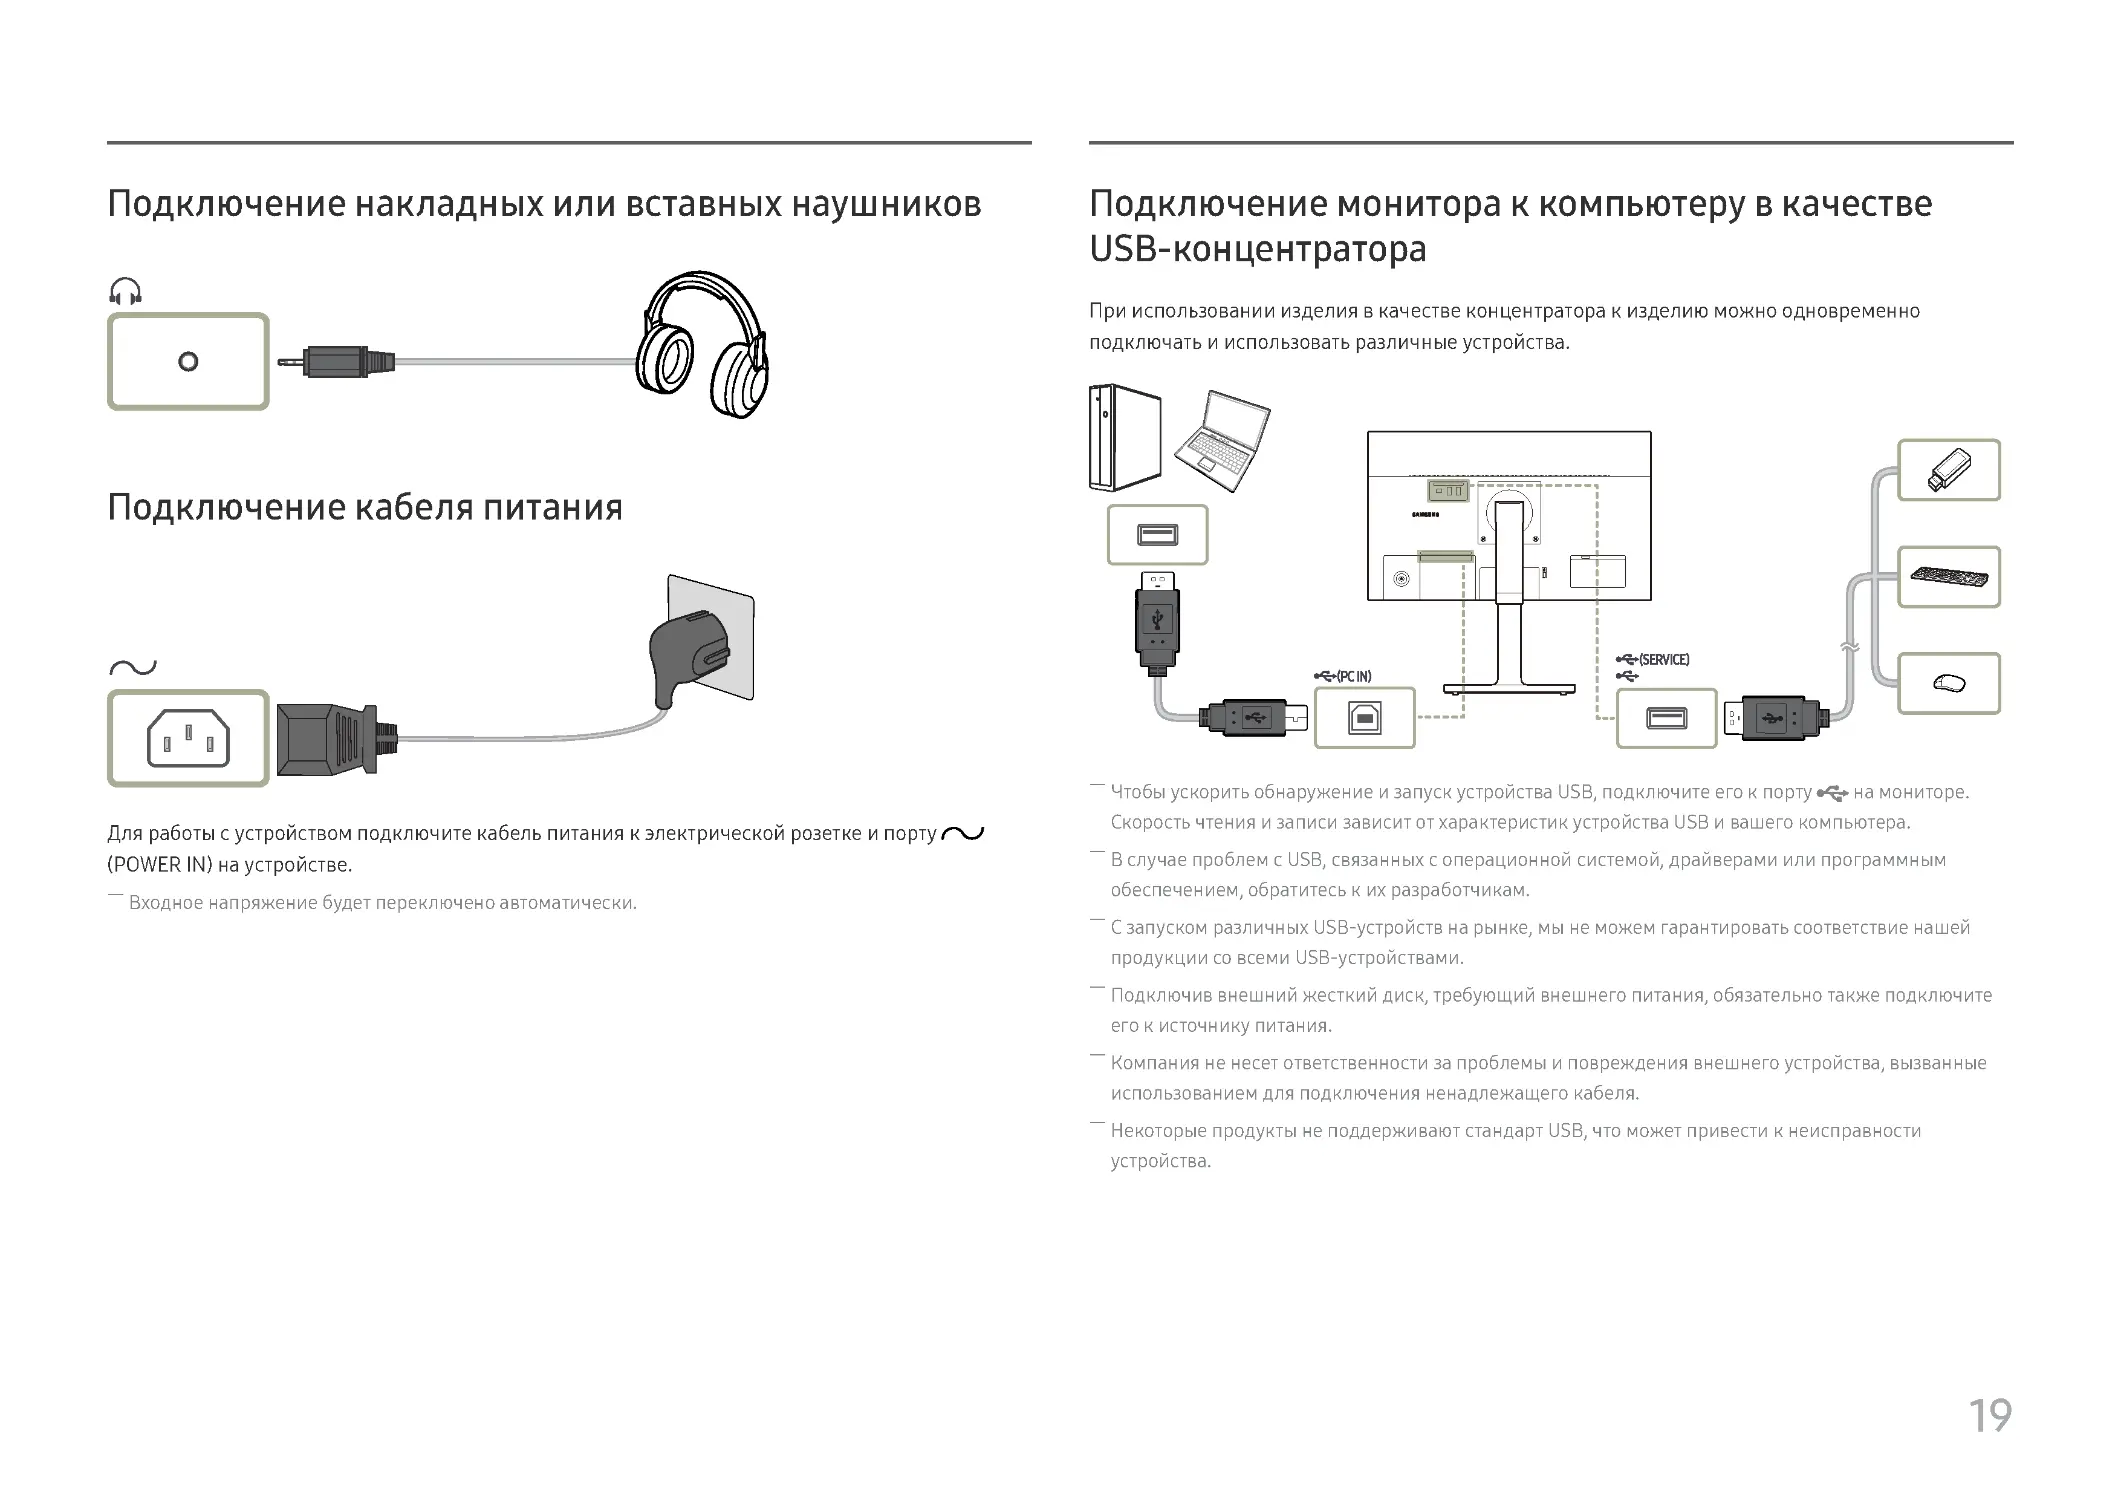 ﻿Подключение накладных или вставных наушнико
﻿Подключение кабеля питани
﻿Подключение монитора к компьютеру в качестве USB-концентратор